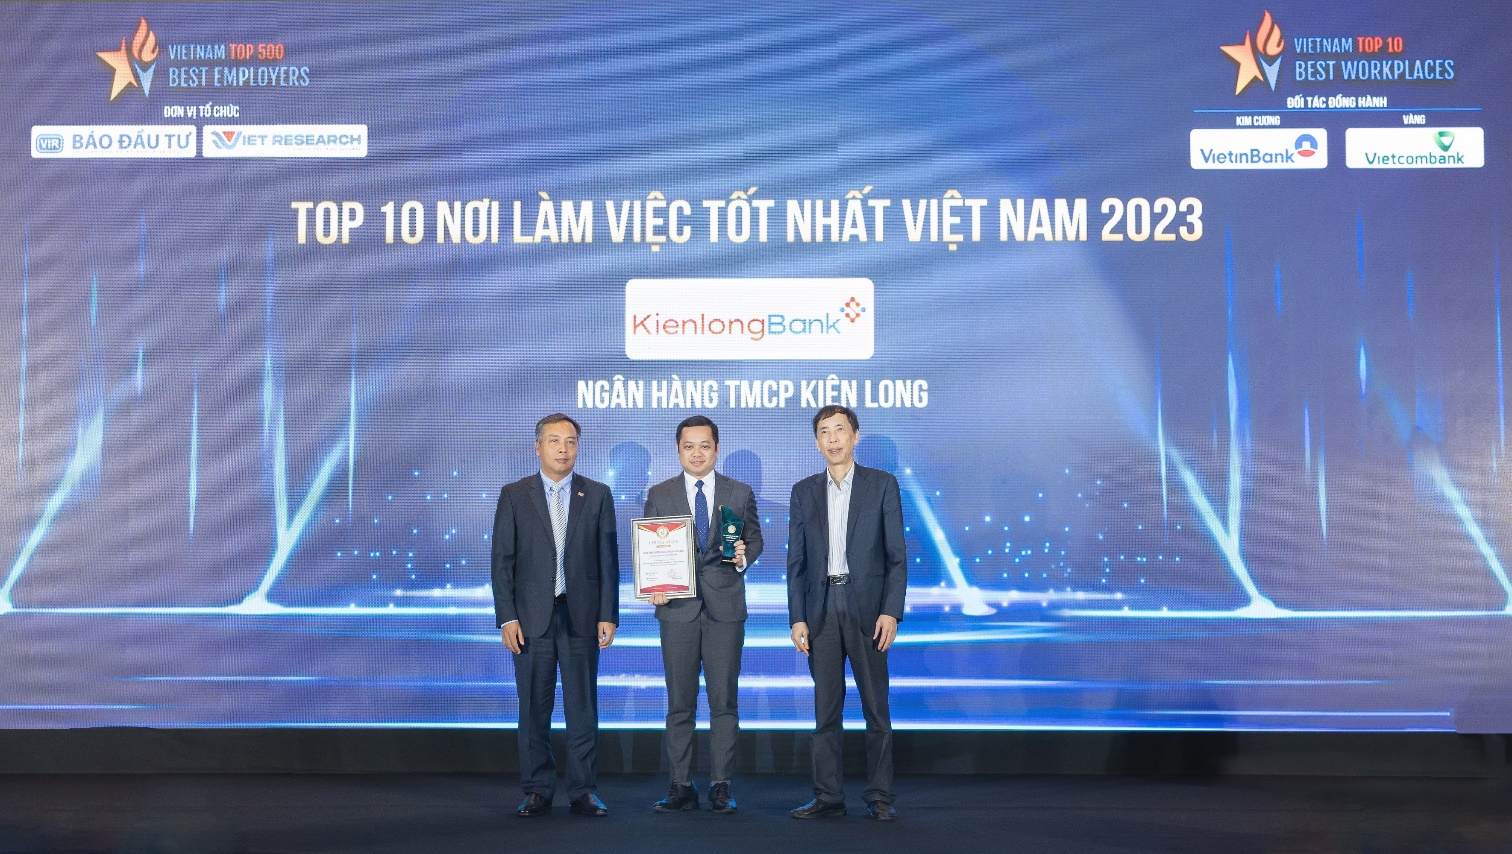 Viet Research: KienlongBank - Top 10 Nơi làm việc tốt nhất Việt Nam ngành Ngân hàng - Ảnh 1.